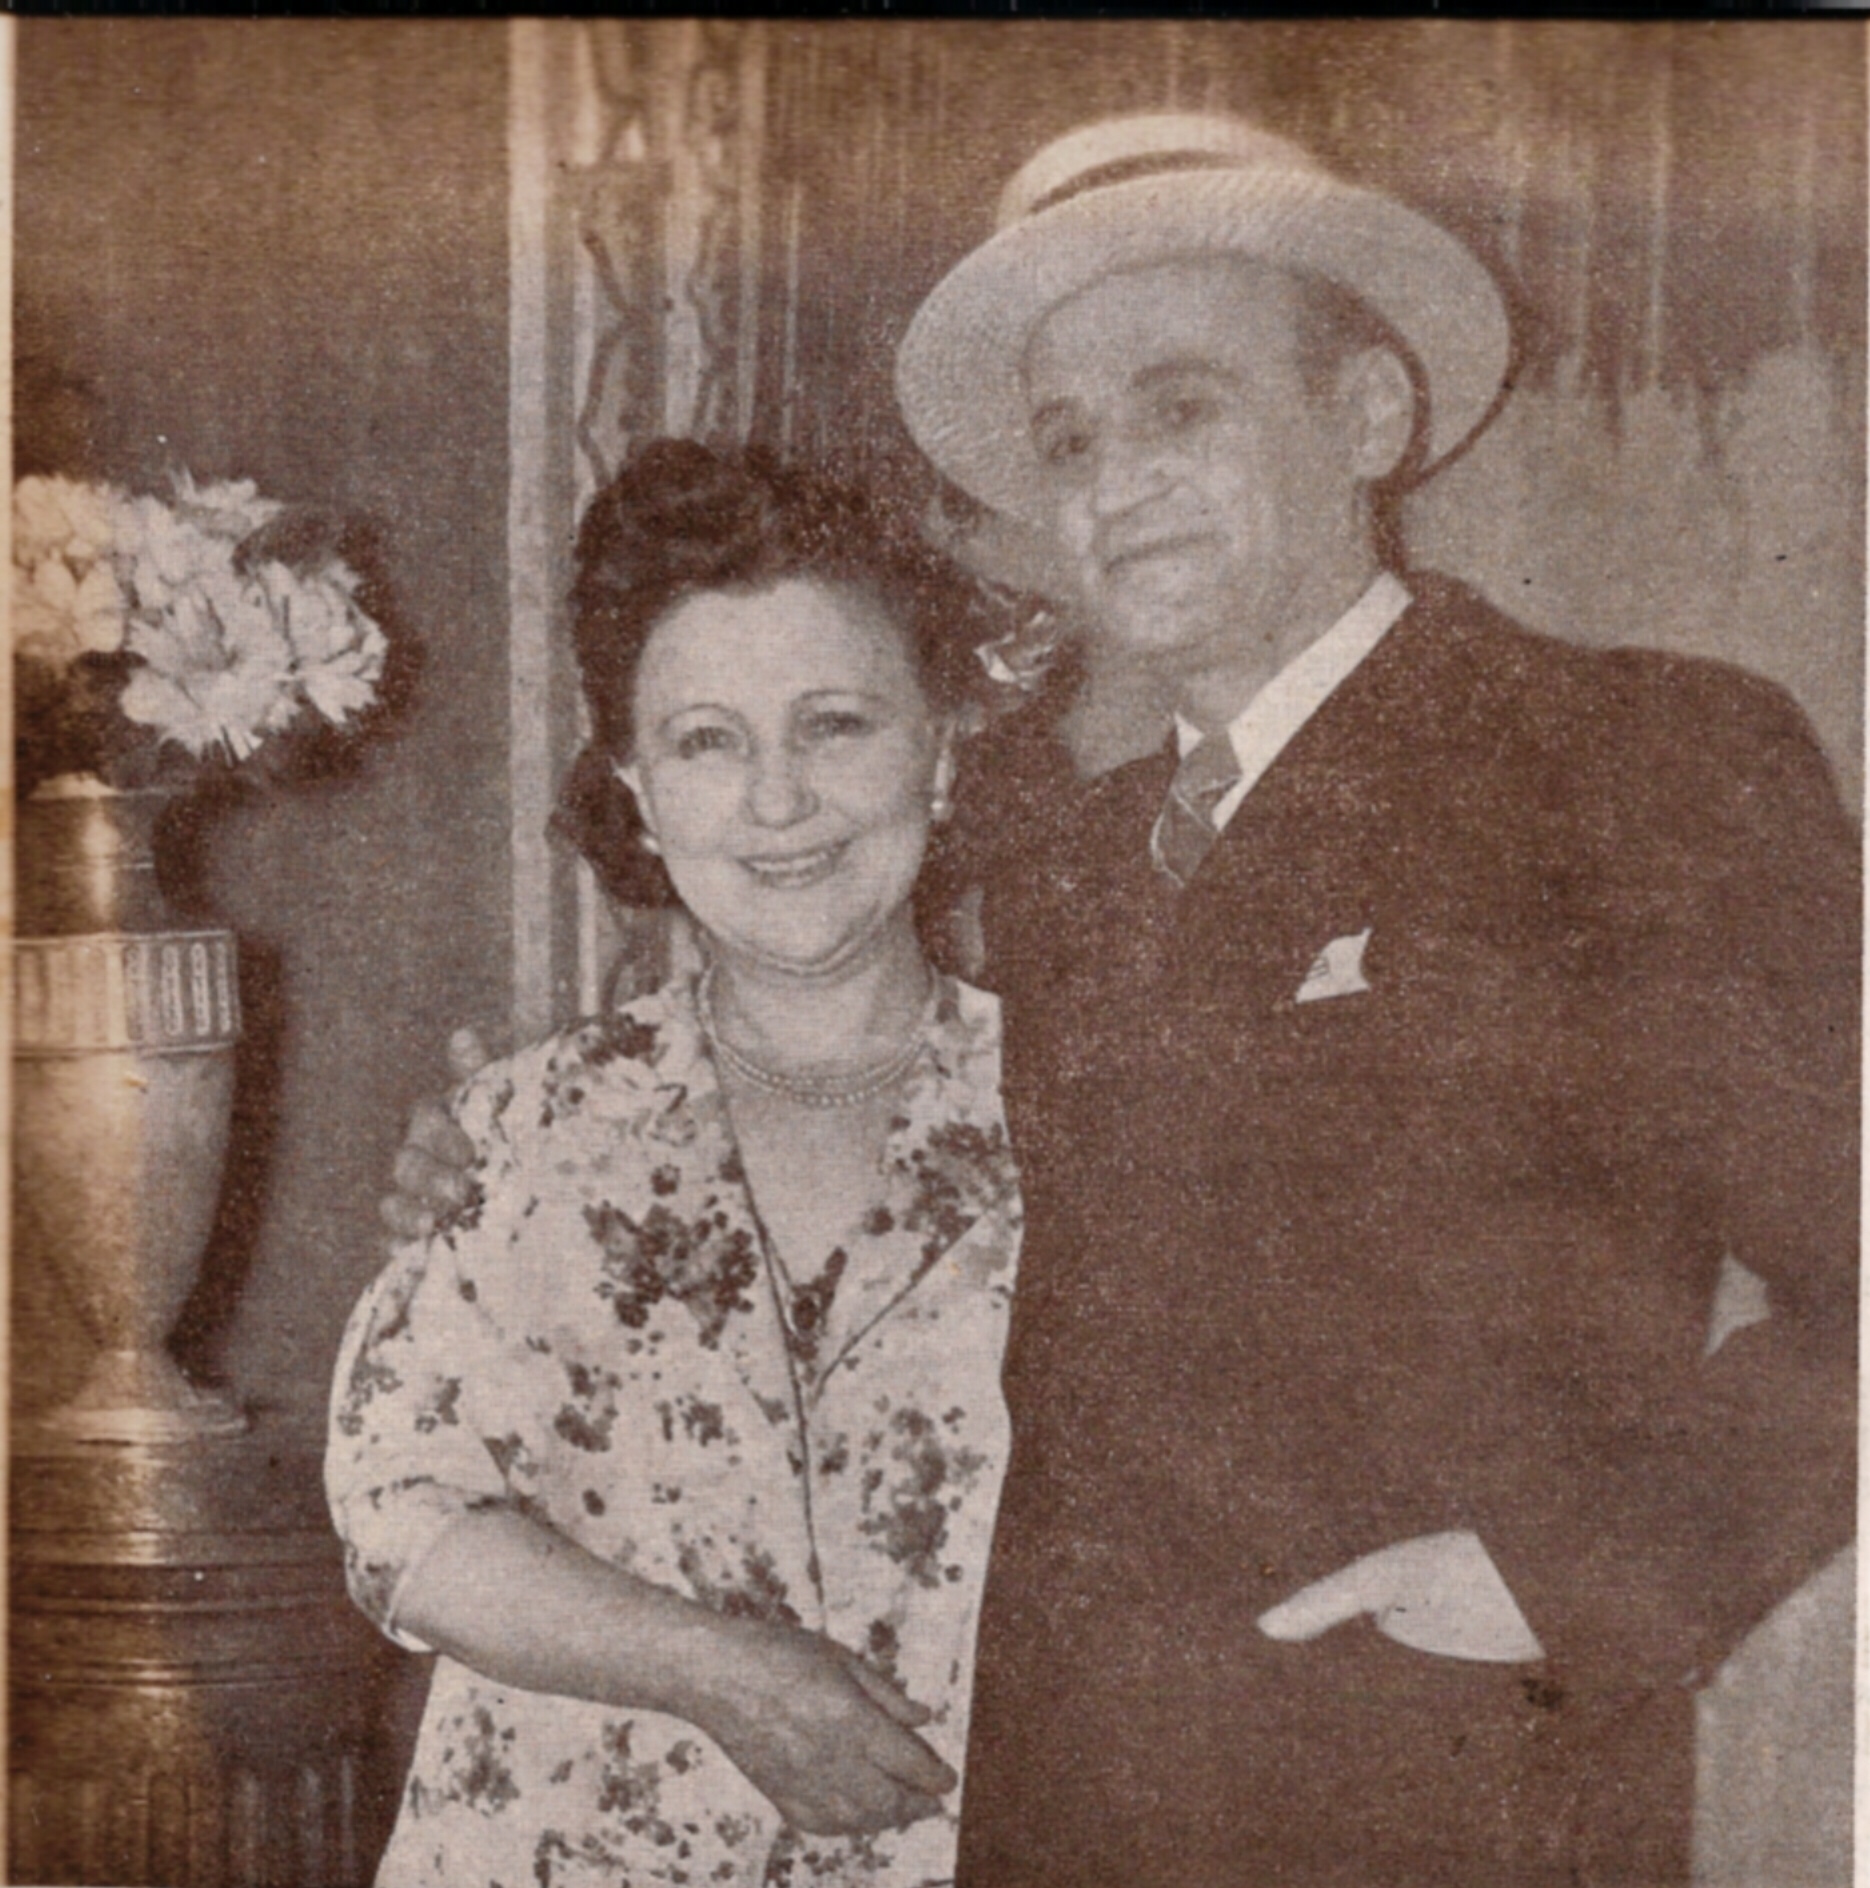 Anna Baum with her husband Meier Tzelniker